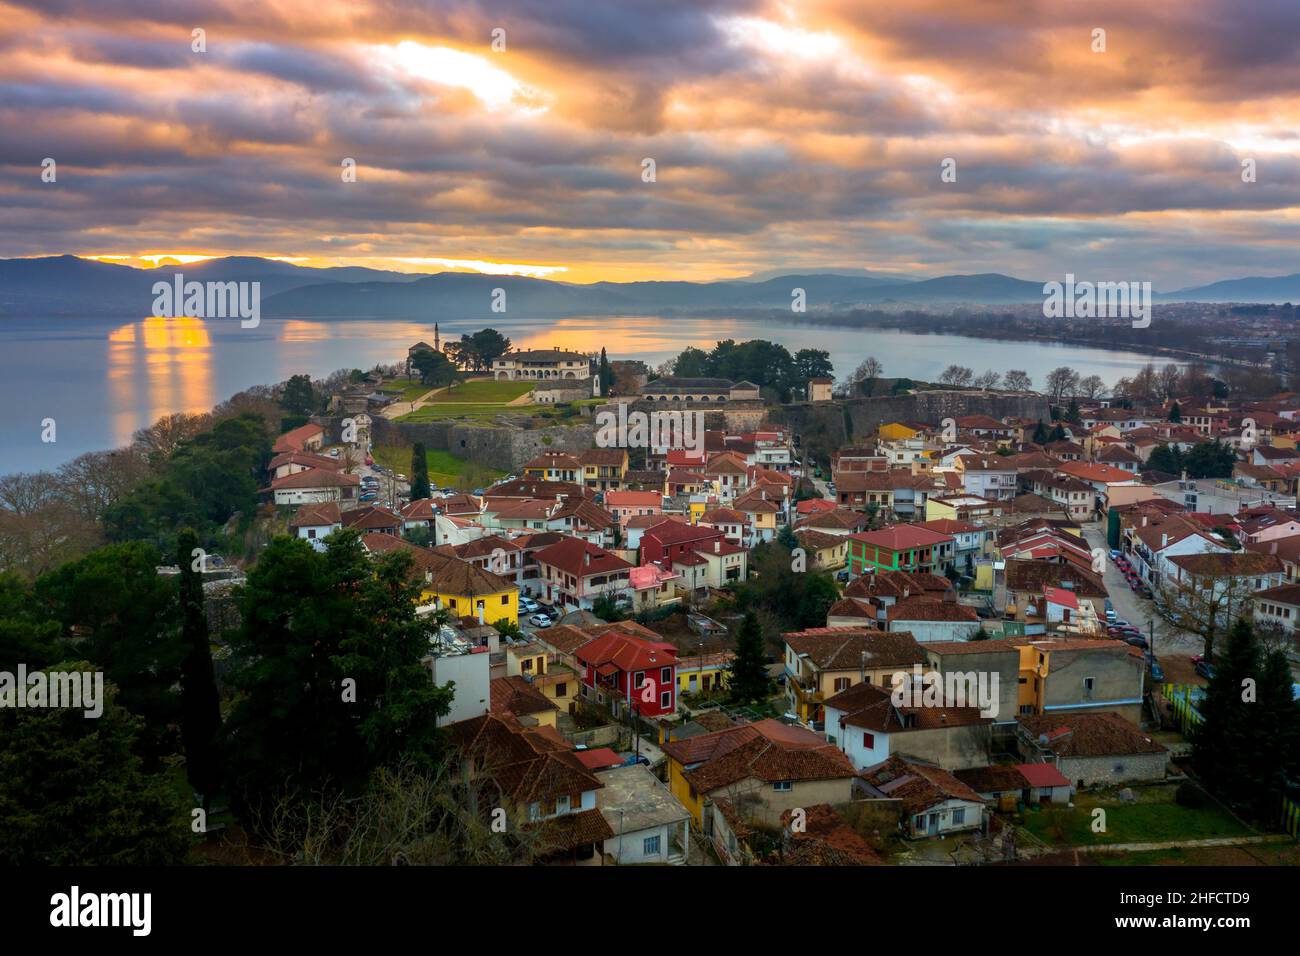 Luftaufnahme der Stadt Ioannina in Griechenland, Aslan Pasha Tzami, dem See mit der Insel Kyra Frosini oder nissaki. Stockfoto